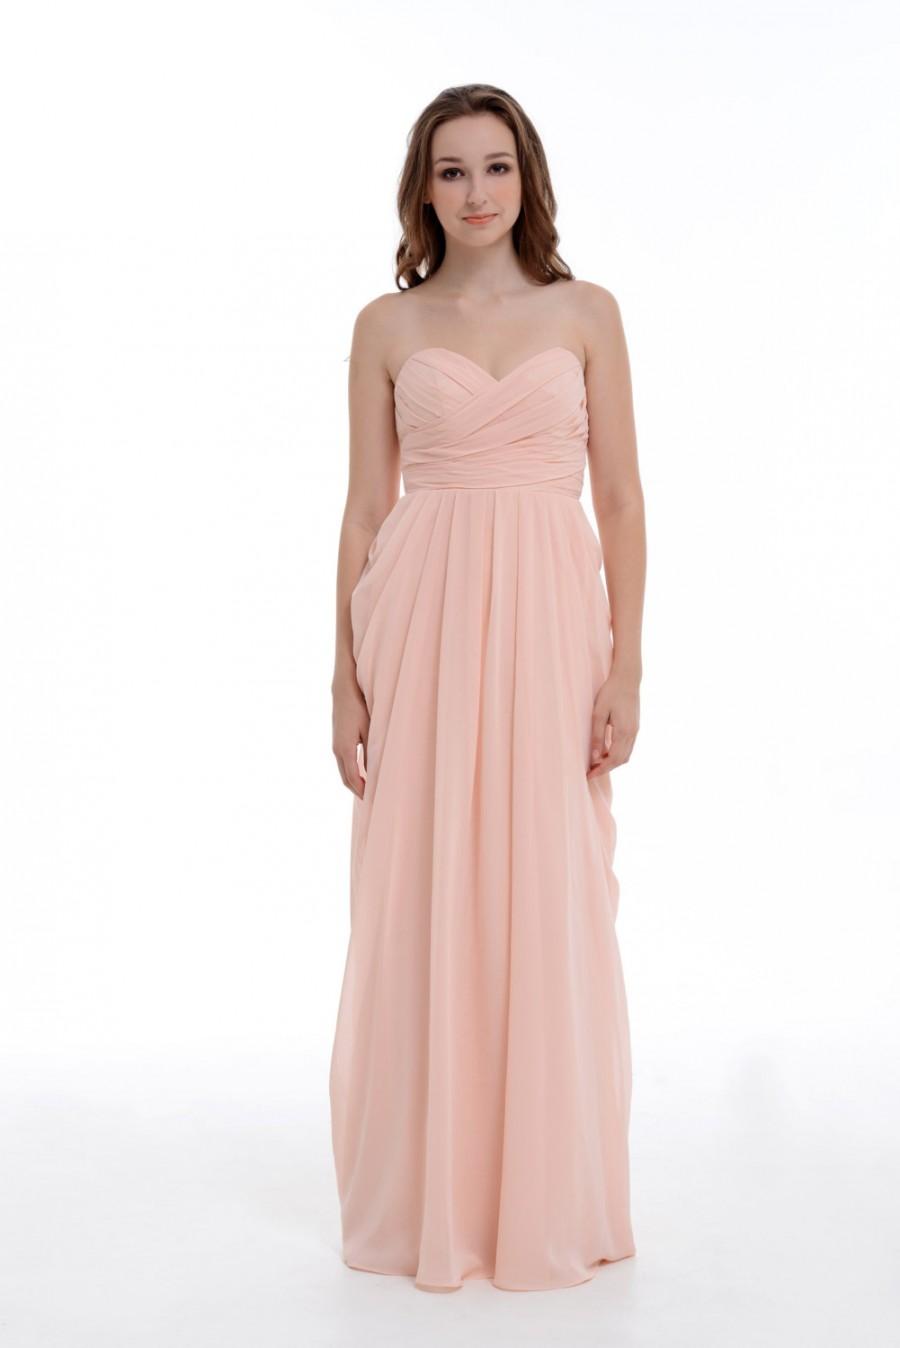 Свадьба - Prom Dress 2015, Sweetheart Pearl Pink A-Line/Princess Floor-Length Chiffon Bridesmaid Dress With Ruffle